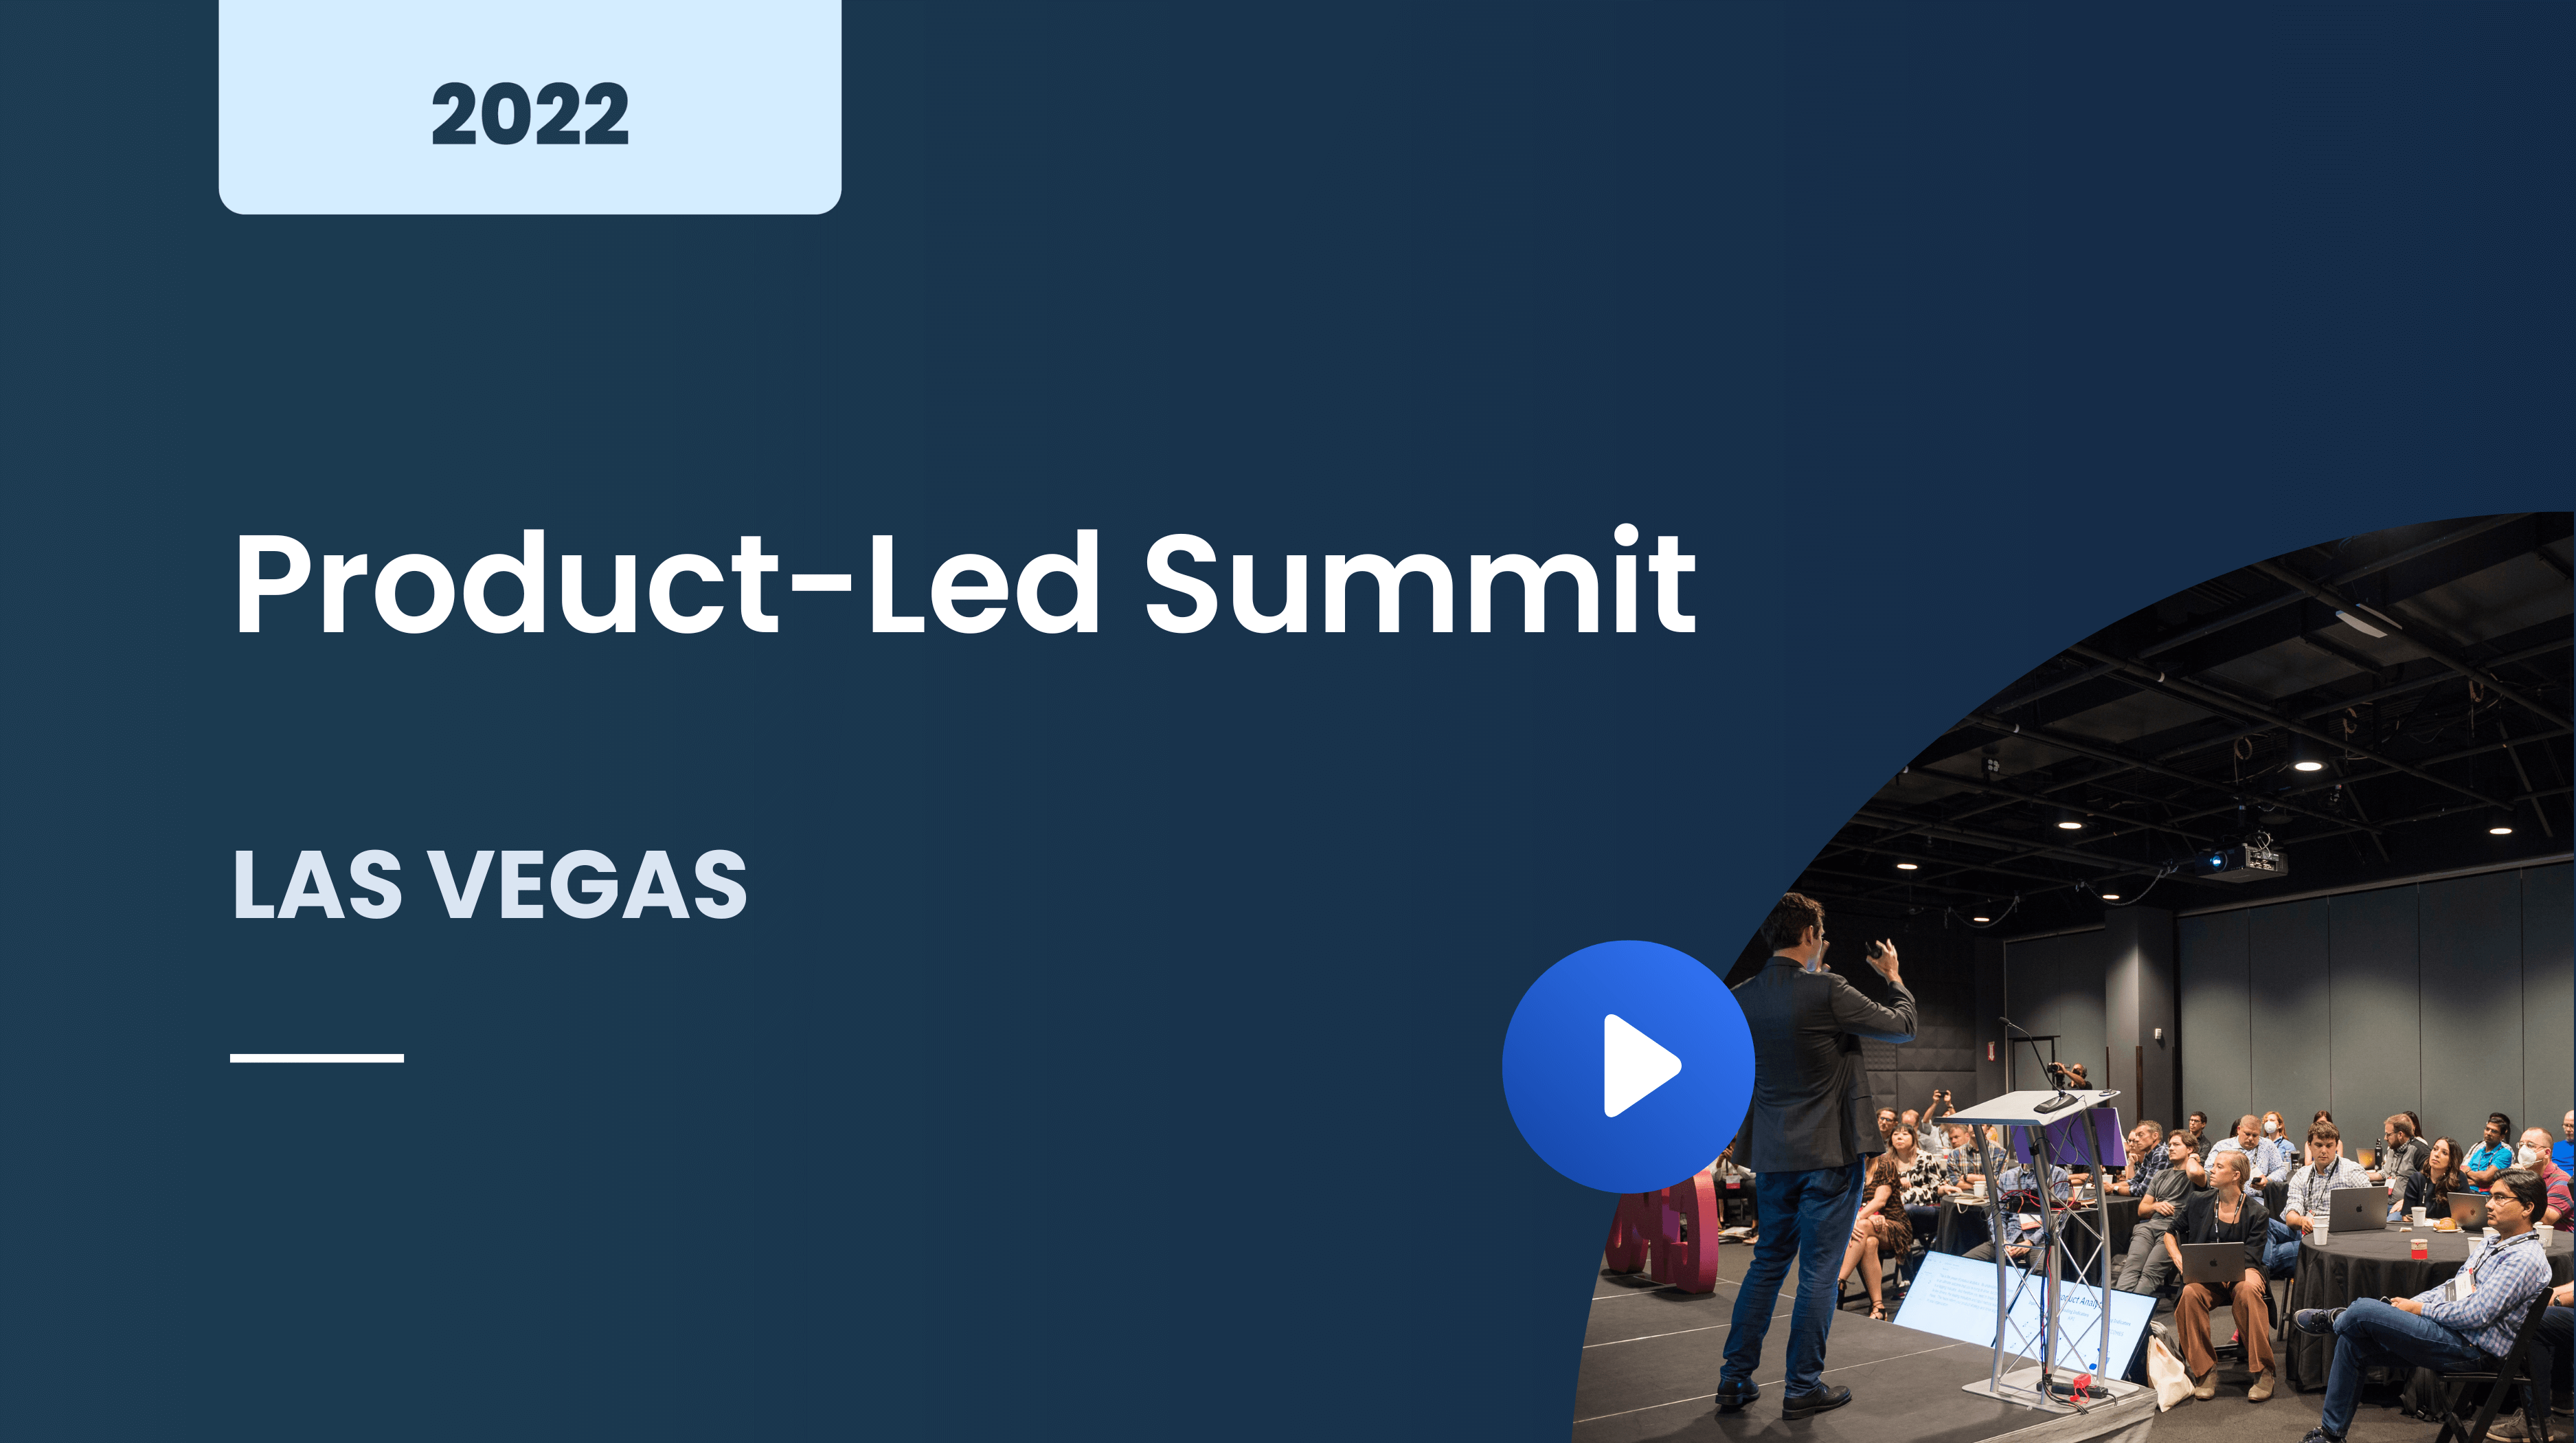 Product-Led Summit Las Vegas 2022